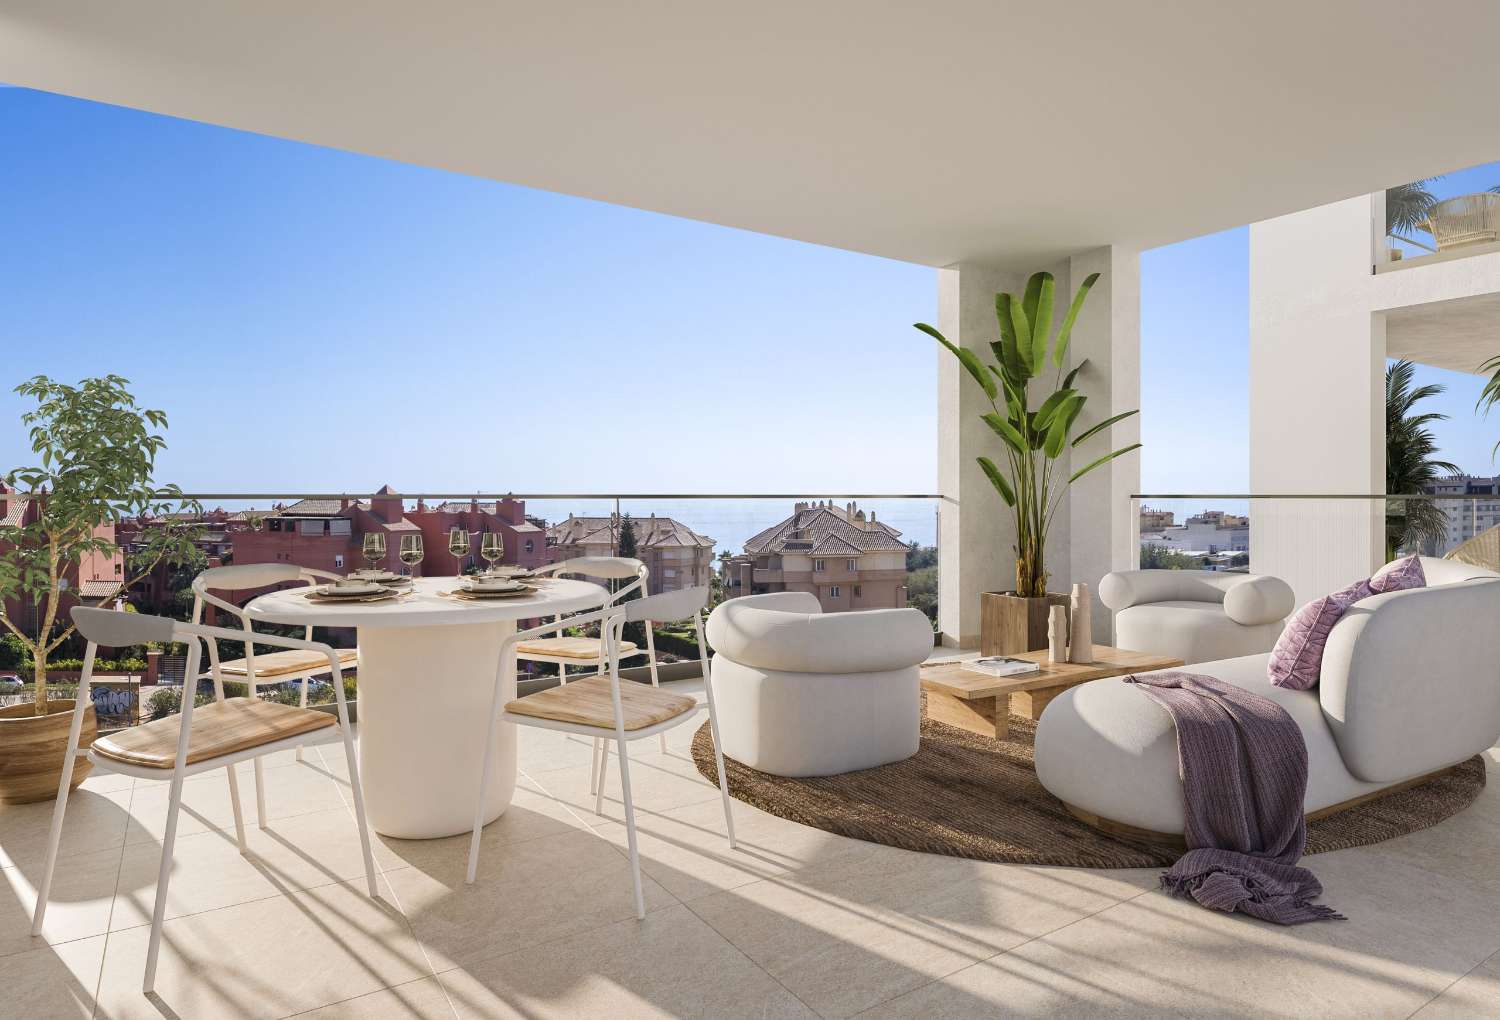 2 или 3 спальни, 2 ванные комнаты и терраса с видом на море – от €218.000